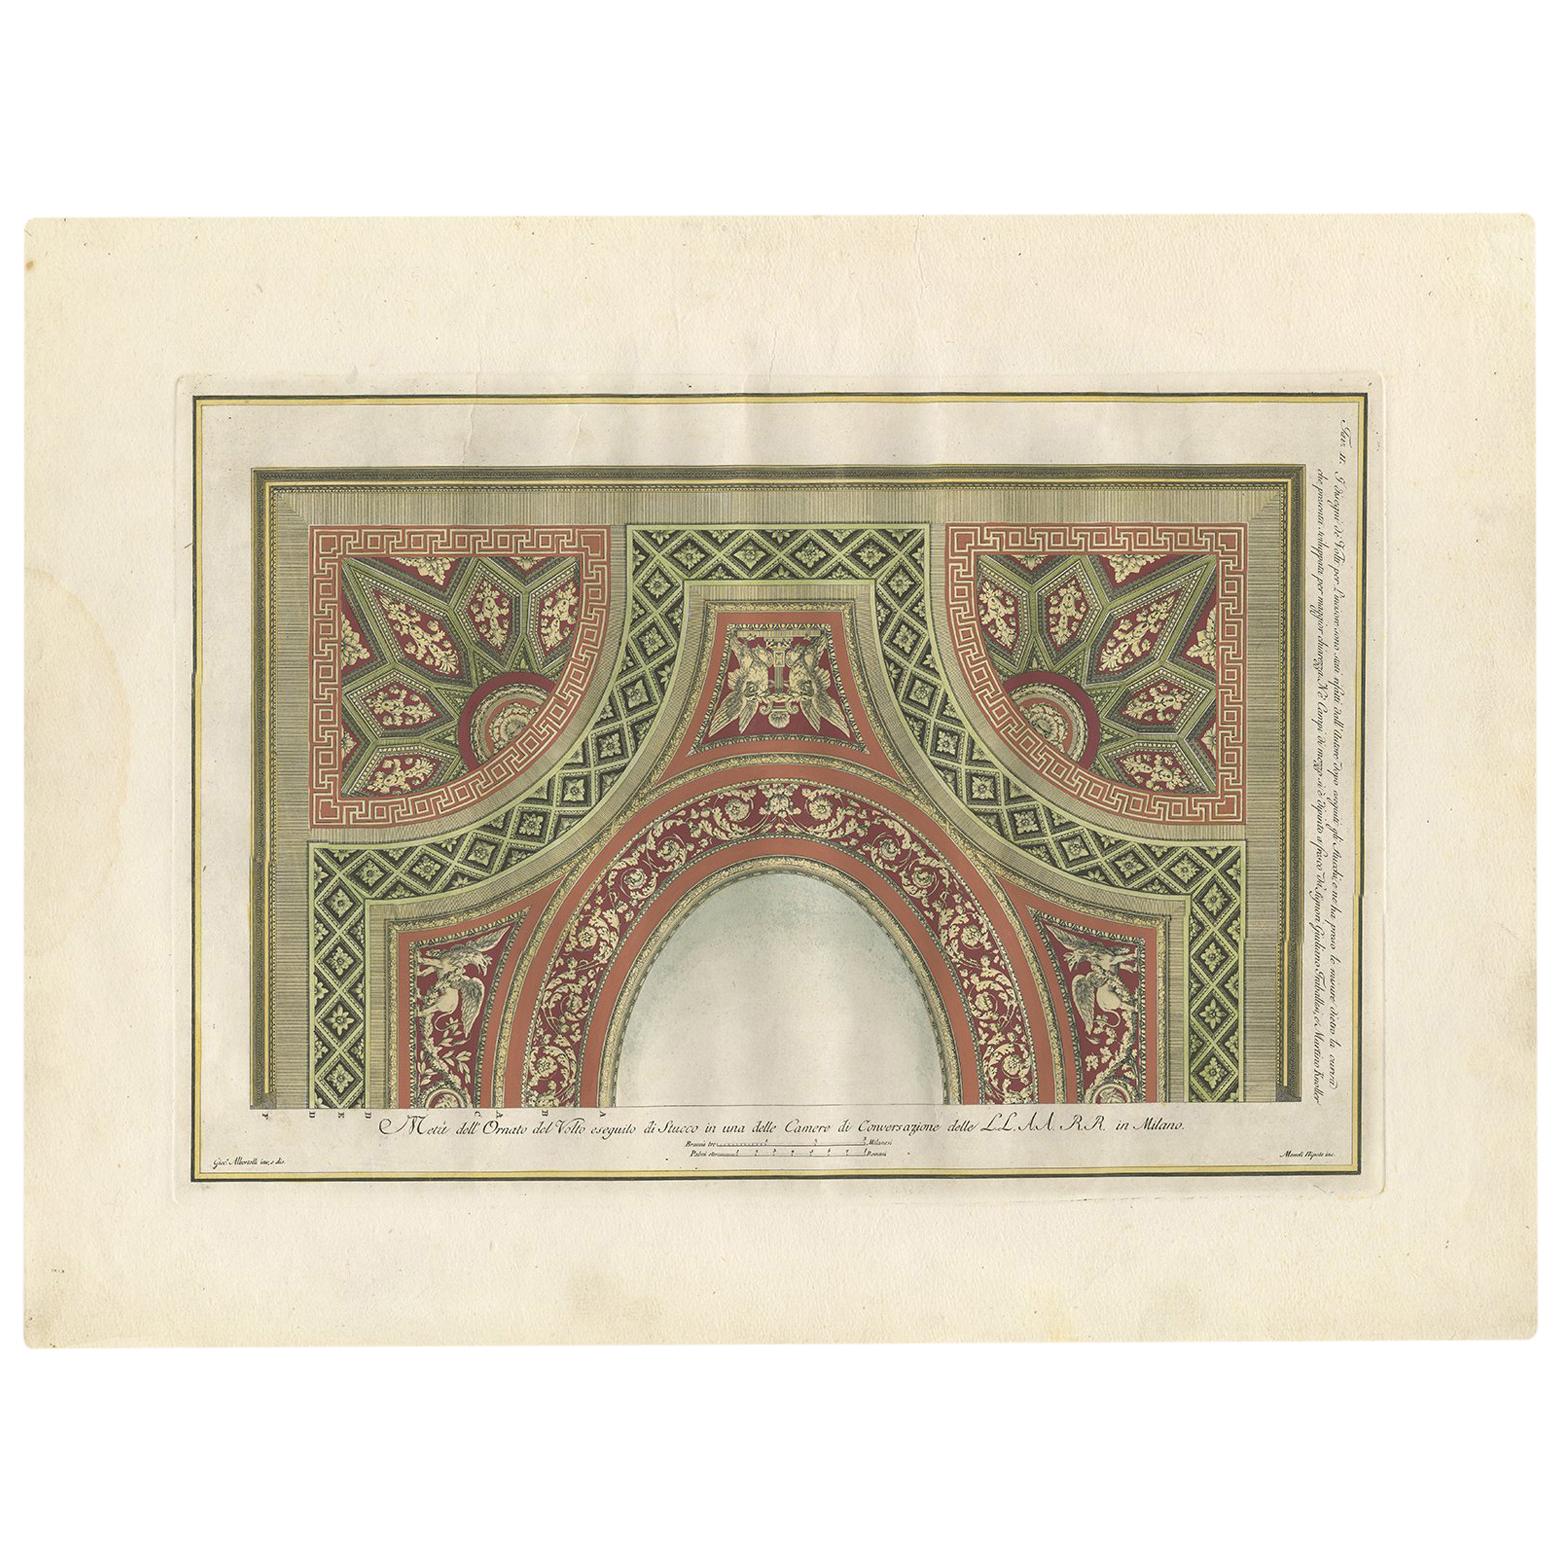 Antique Architecture Print of Ornaments 'Tav. II' by Albertolli